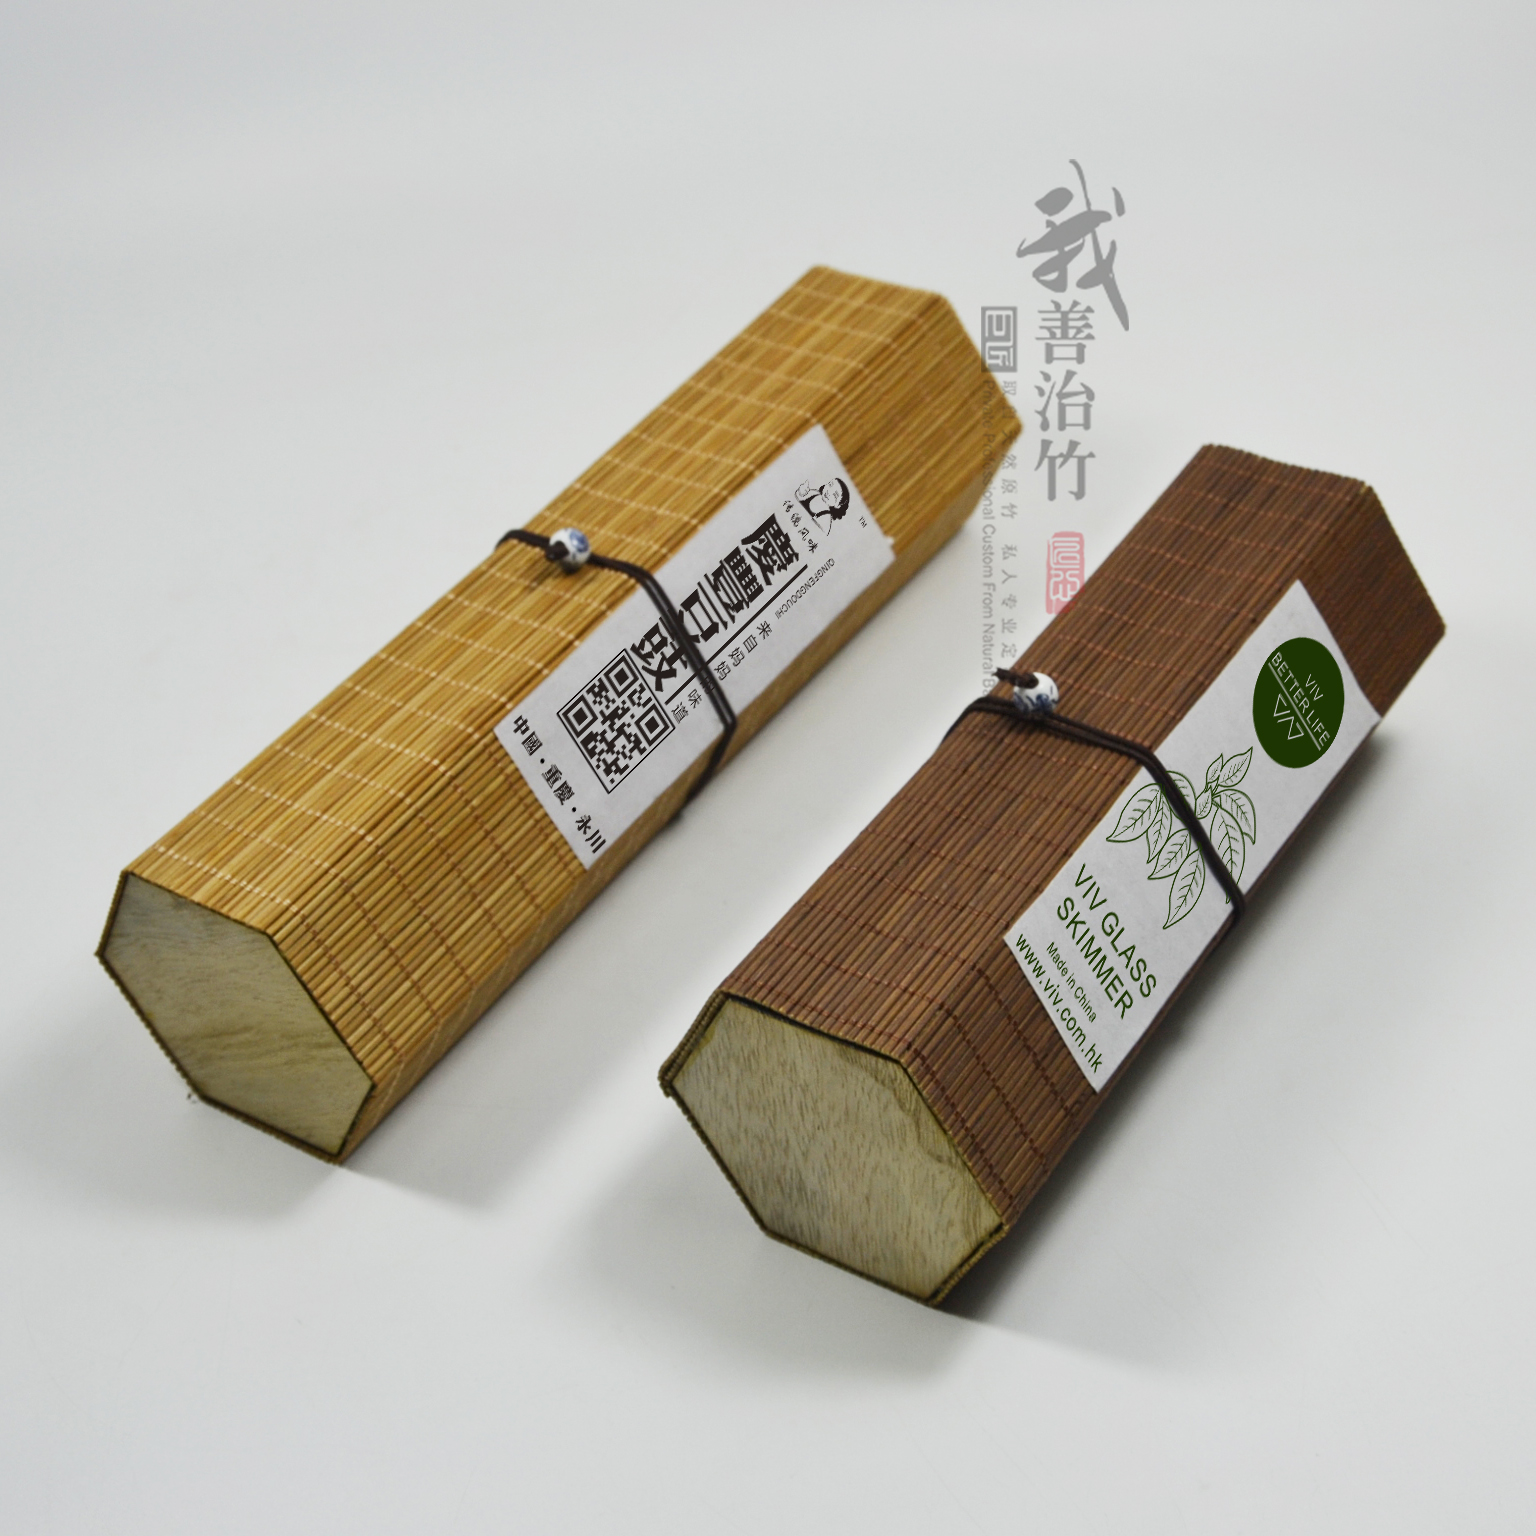 厂家批发六角竹丝盒竹帘盒竹编盒寿司盒茶叶包装盒竹包装竹制品图片